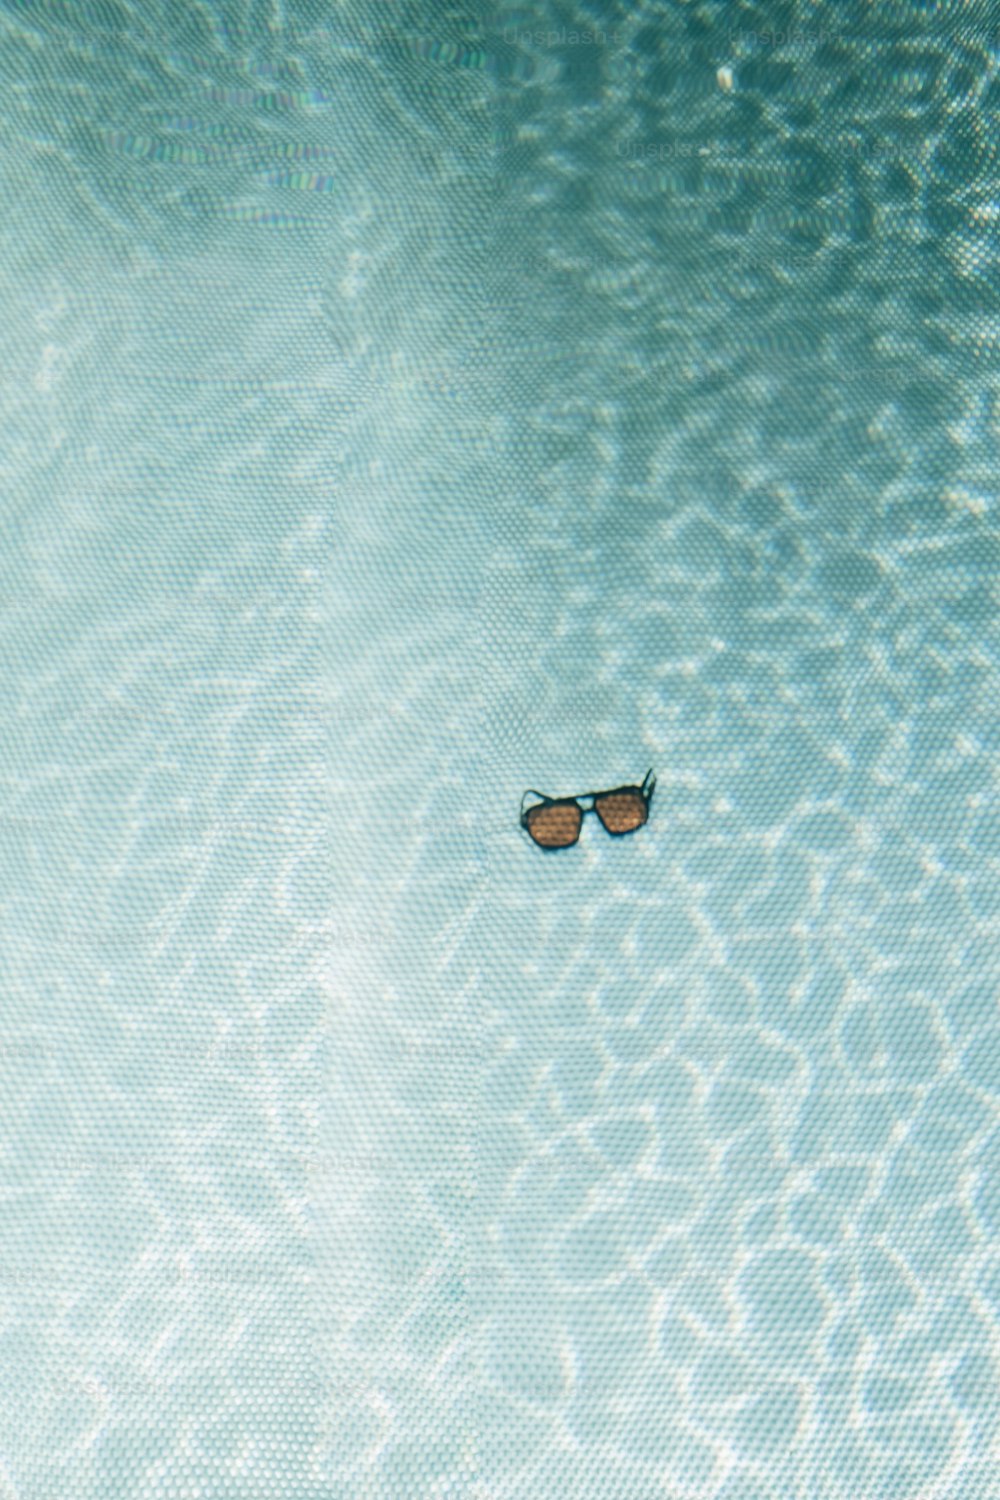 Eine Sonnenbrille, die in einem Wasserbecken schwimmt